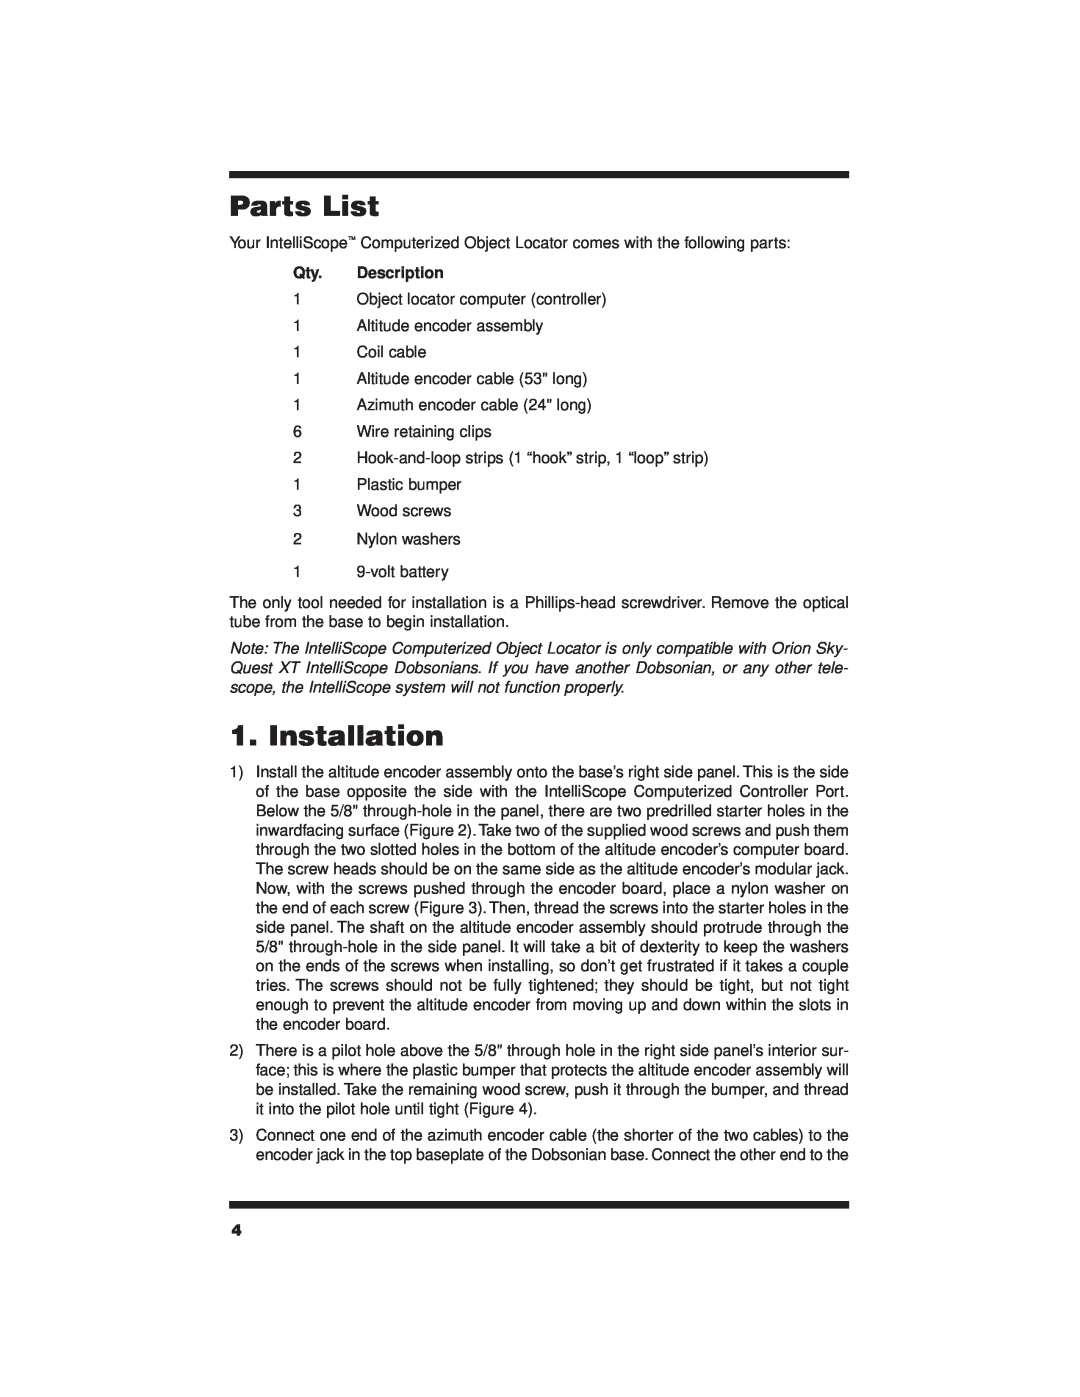 Orion 7880 instruction manual Parts List, Installation, Qty. Description 